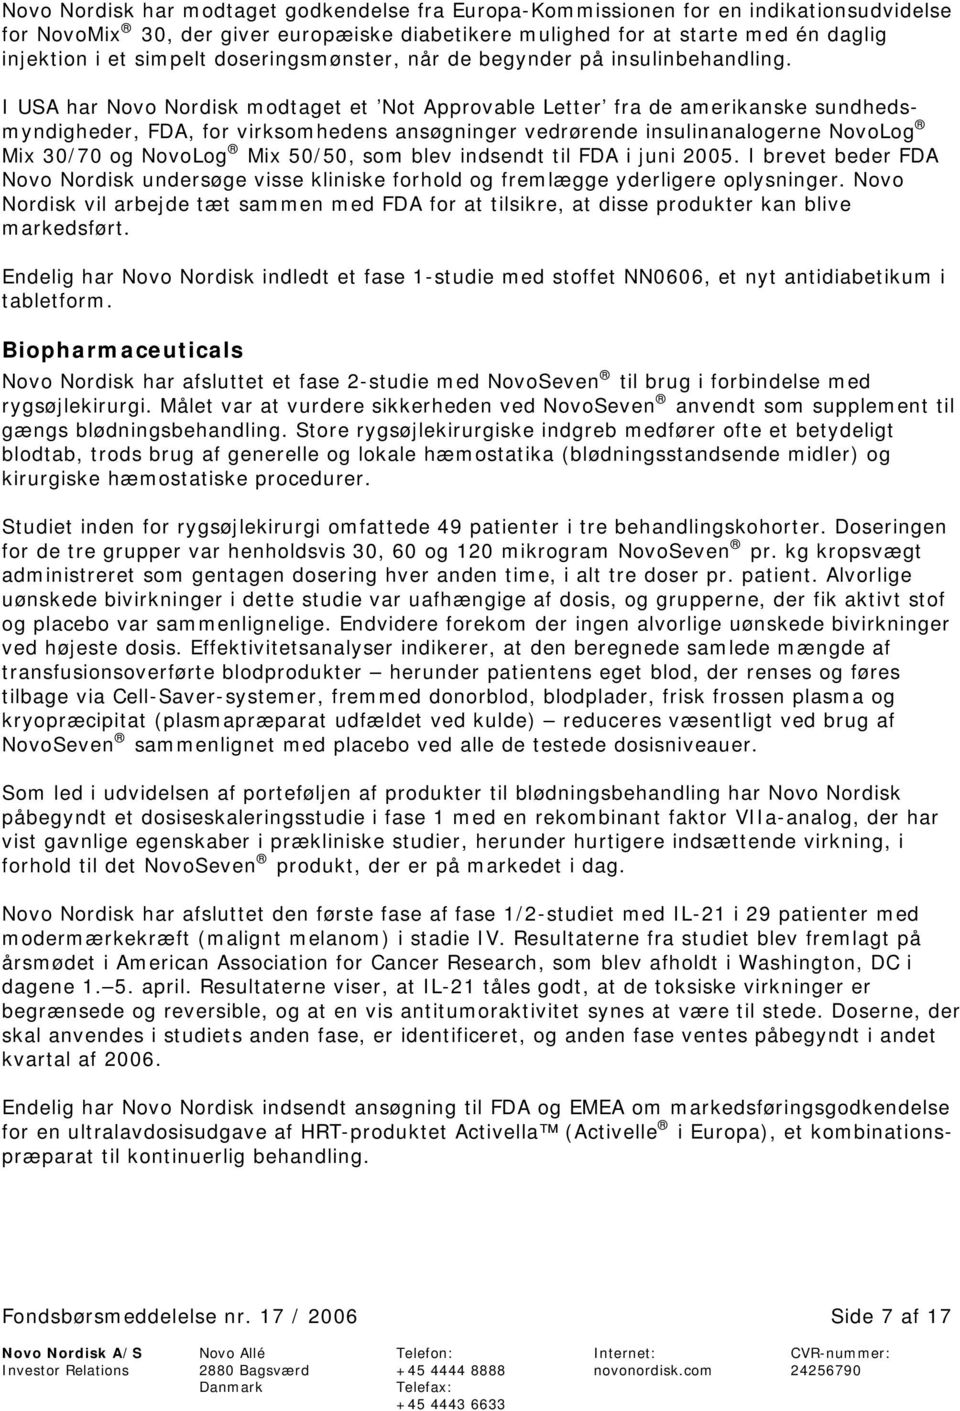 I USA har Novo Nordisk modtaget et Not Approvable Letter fra de amerikanske sundhedsmyndigheder, FDA, for virksomhedens ansøgninger vedrørende insulinanalogerne NovoLog Mix 30/70 og NovoLog Mix